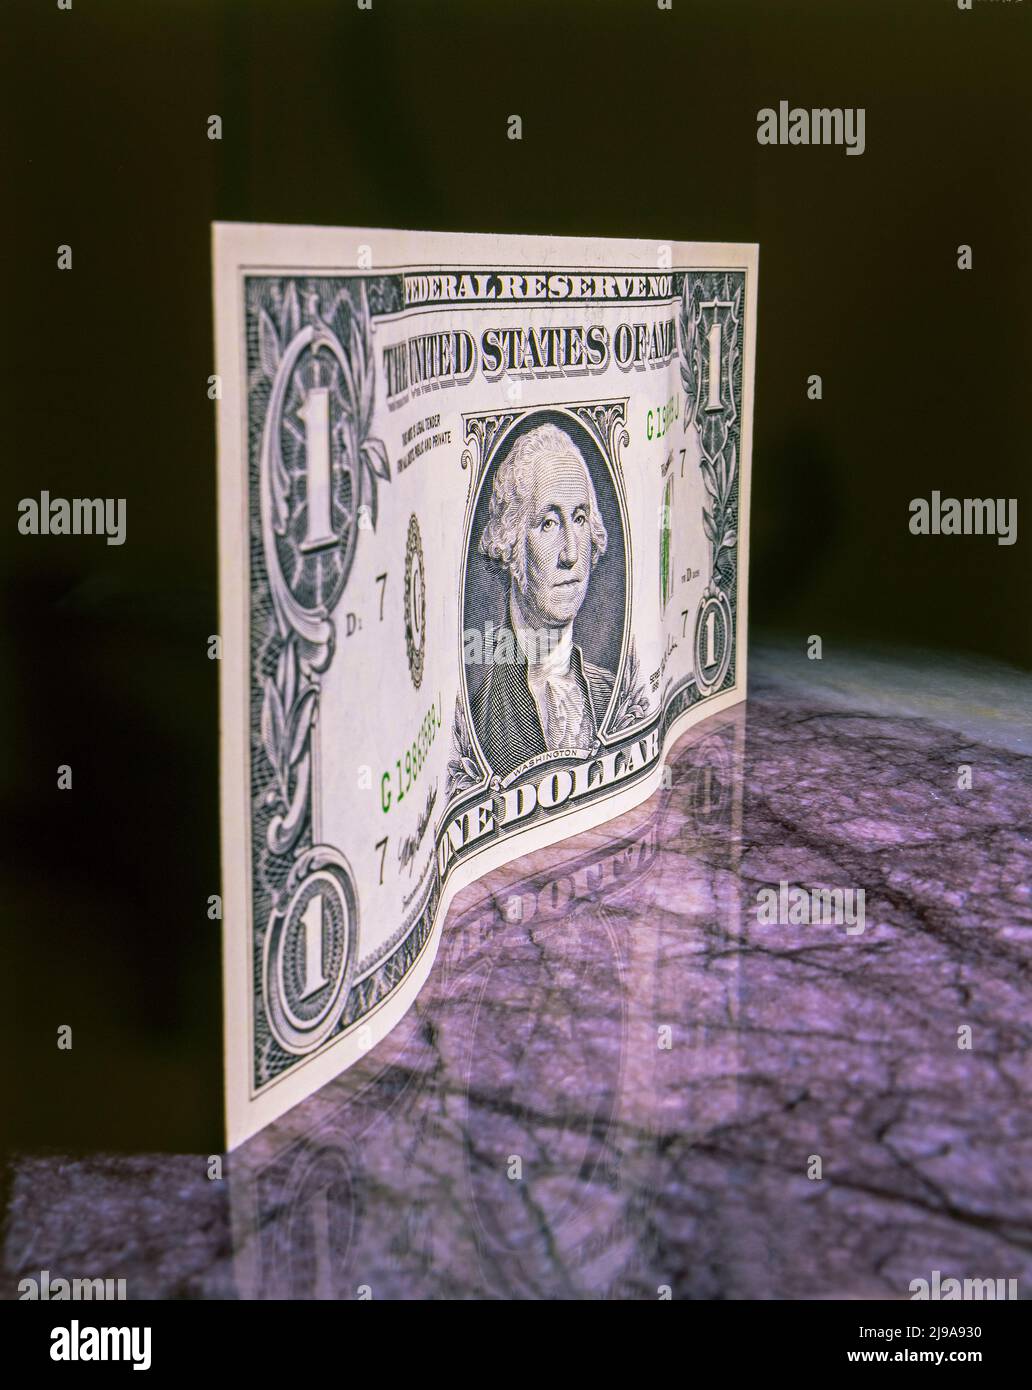 Un dollaro in piedi sulla superficie di marmo. Immagine da lucidi da 4x5 pollici. Fotocamera Deardorff, film Fuji RVP. Foto Stock